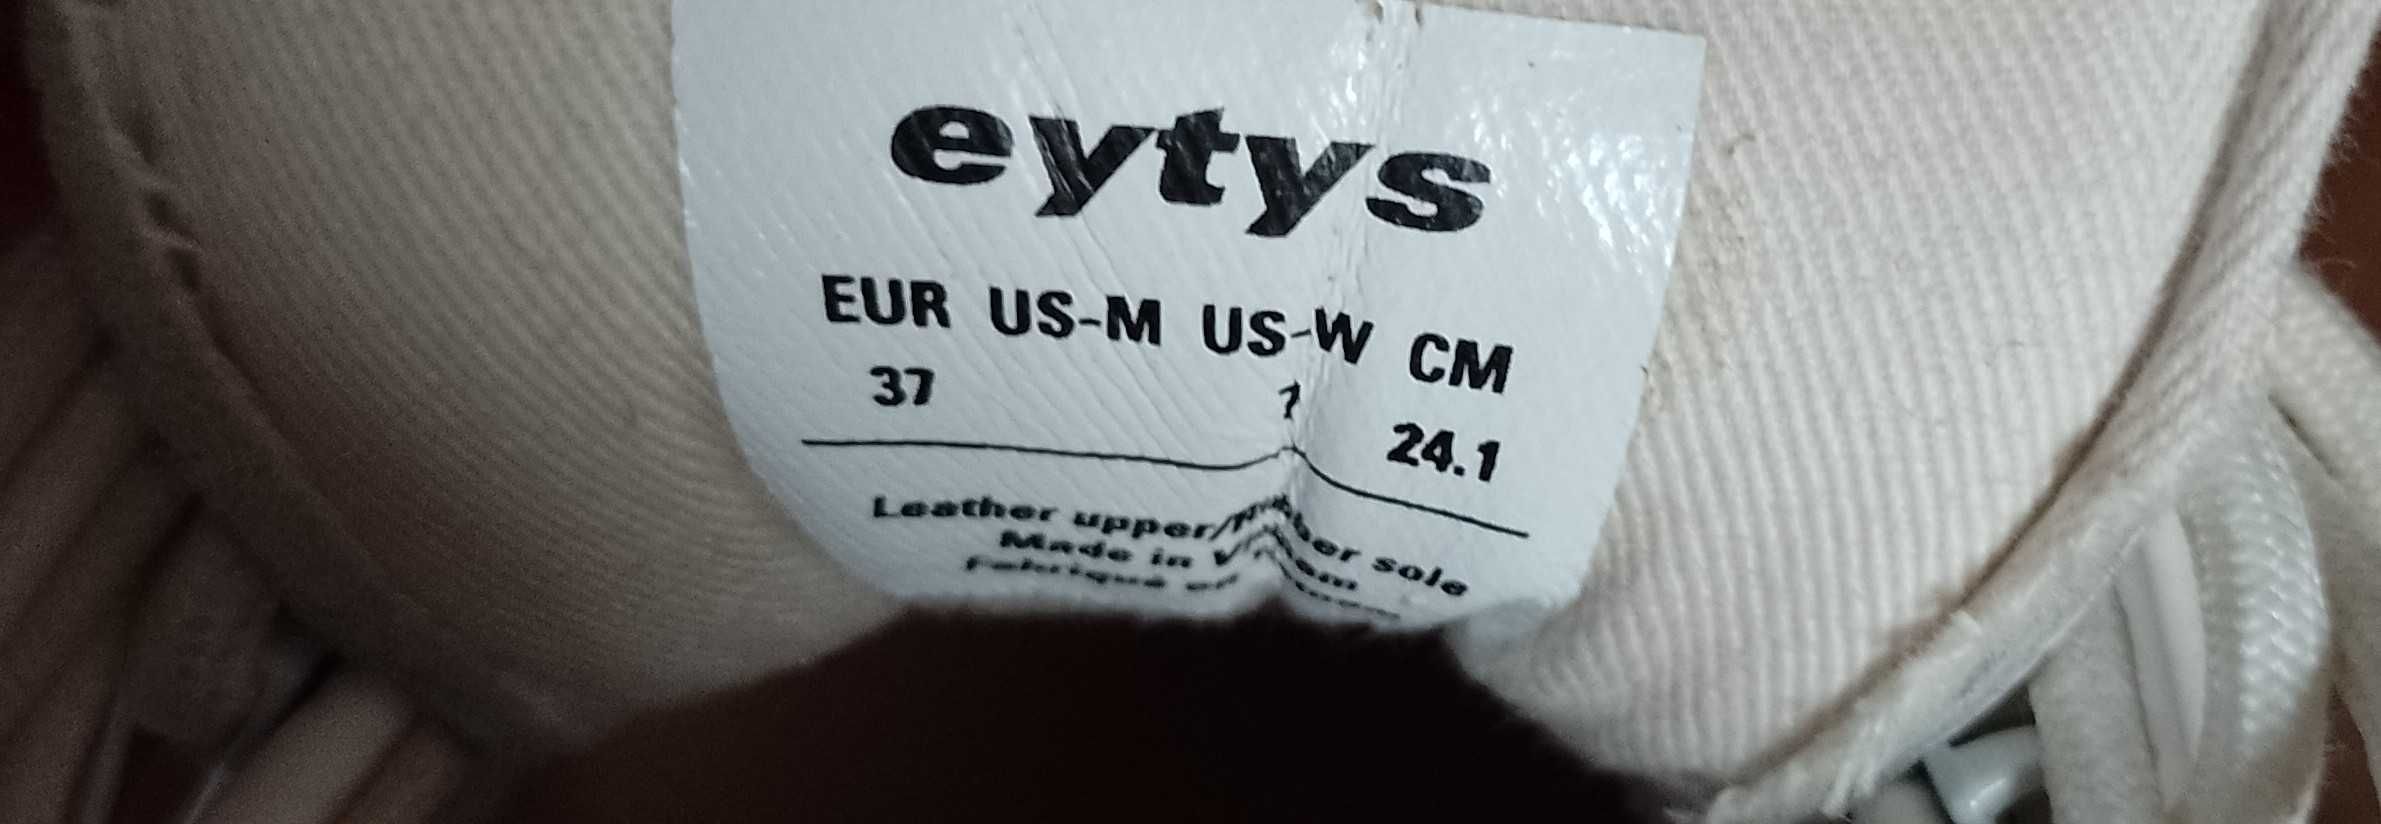 Стильні жіночі кросівки Eytys 37- розмір. Оригінал